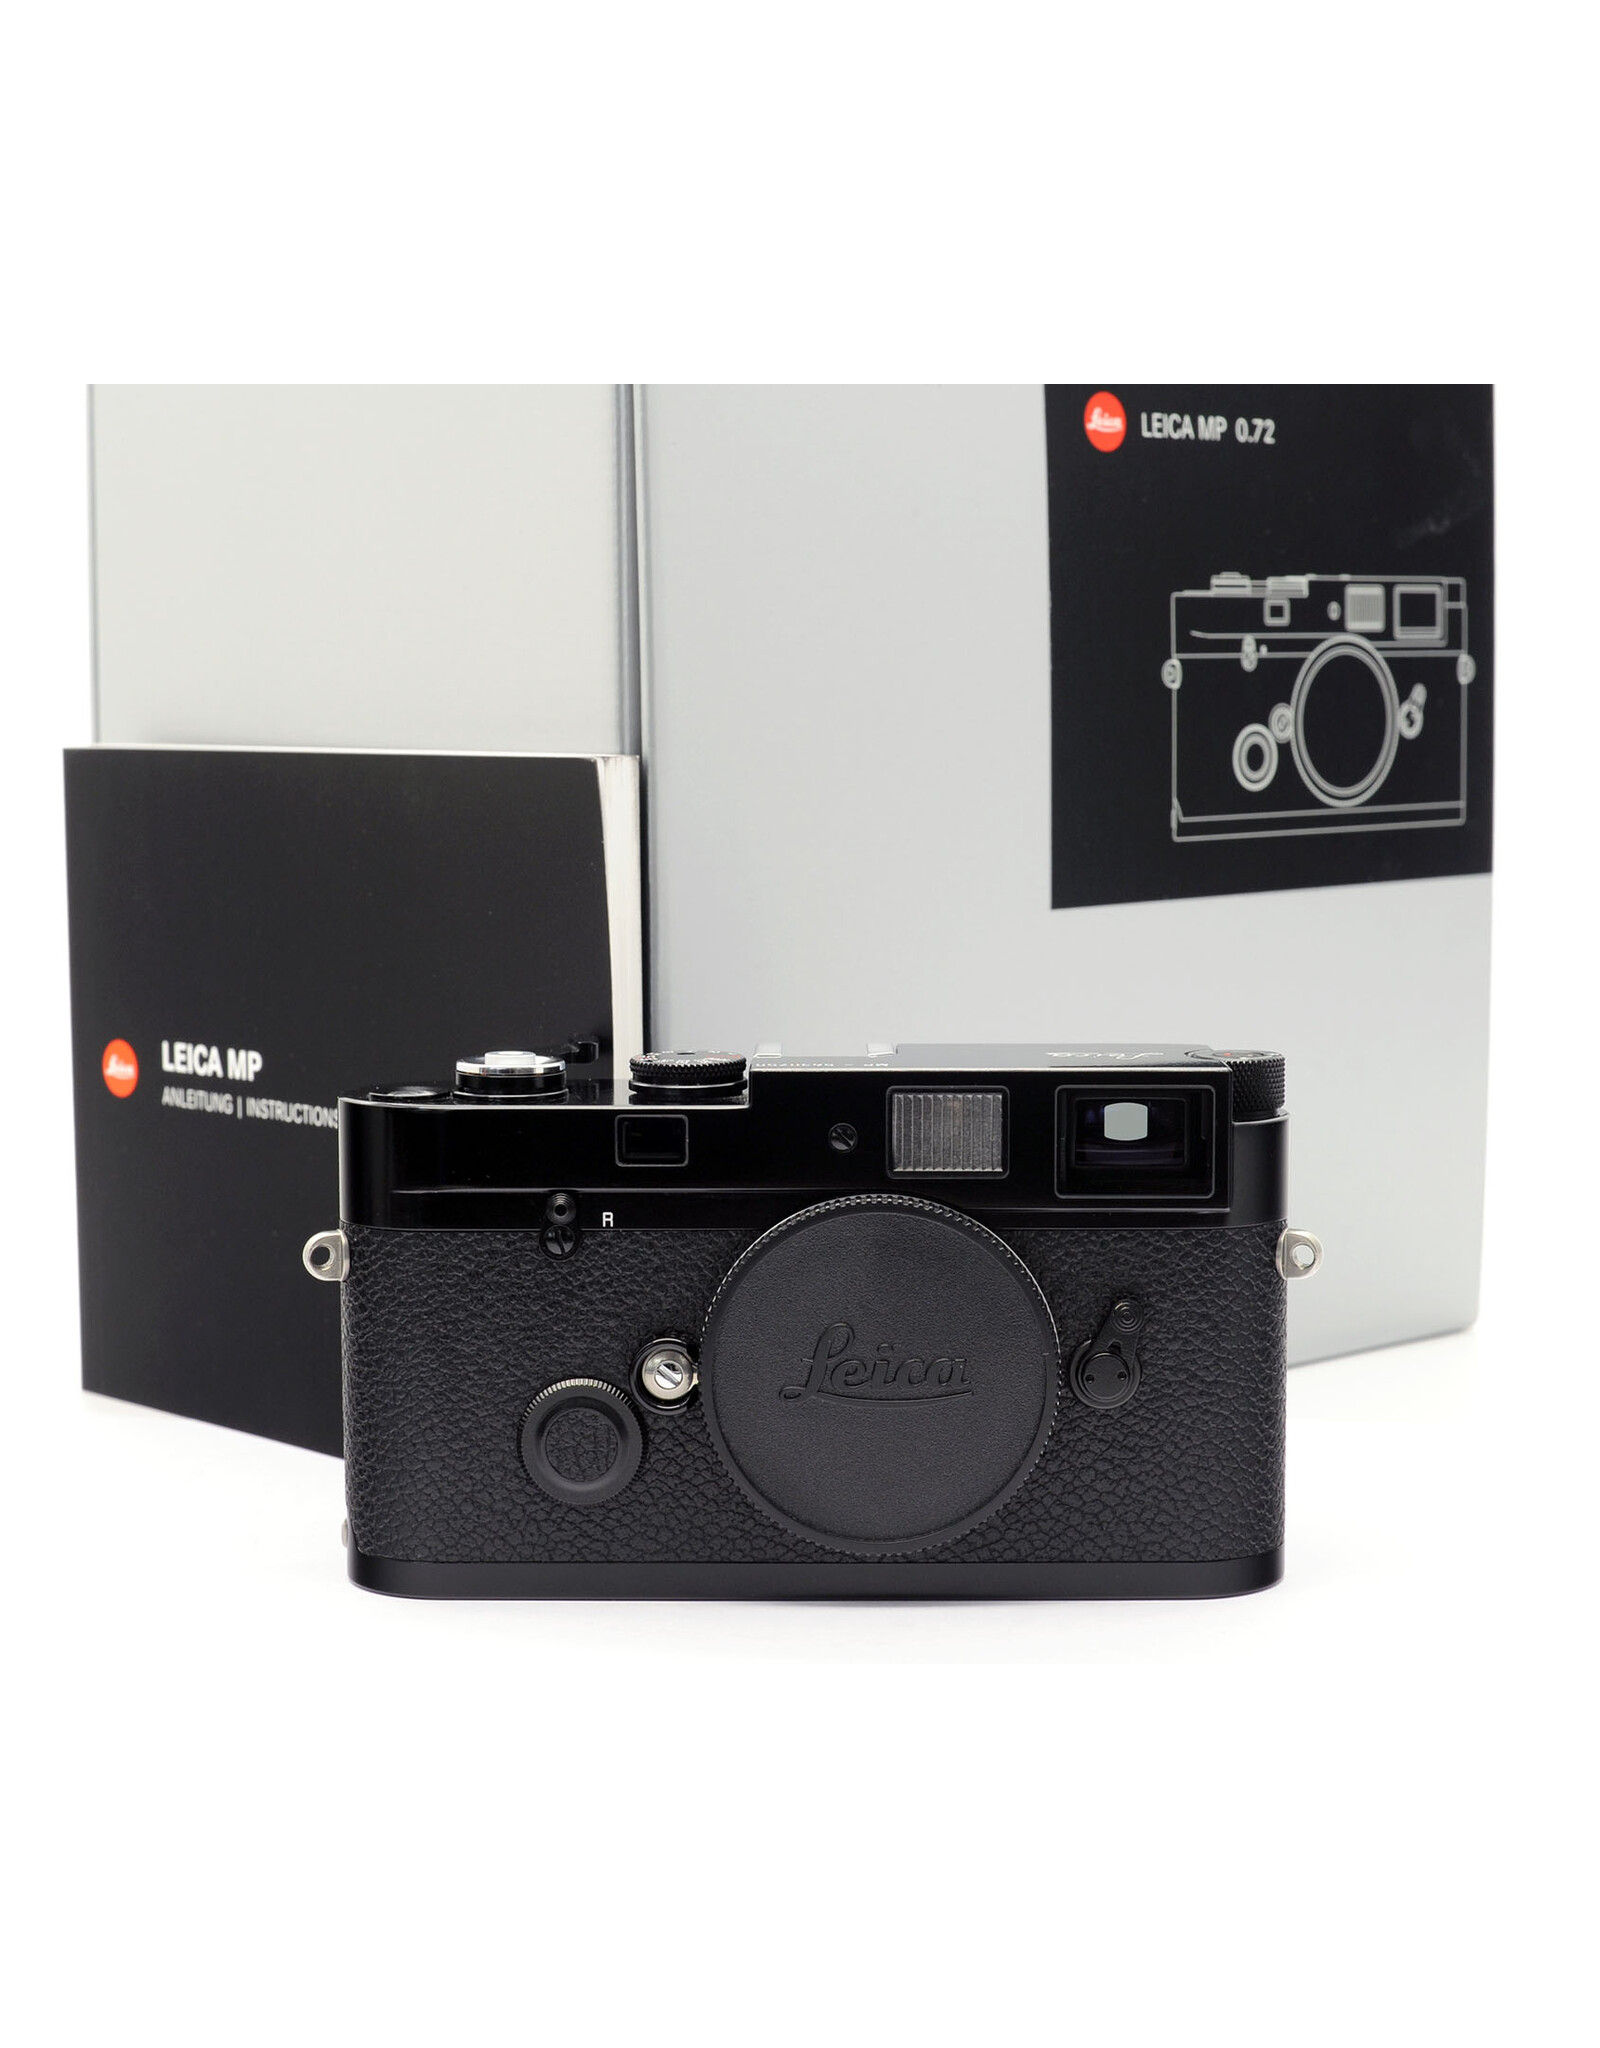 Leica MP 0.72 ブラックペイント - カメラ